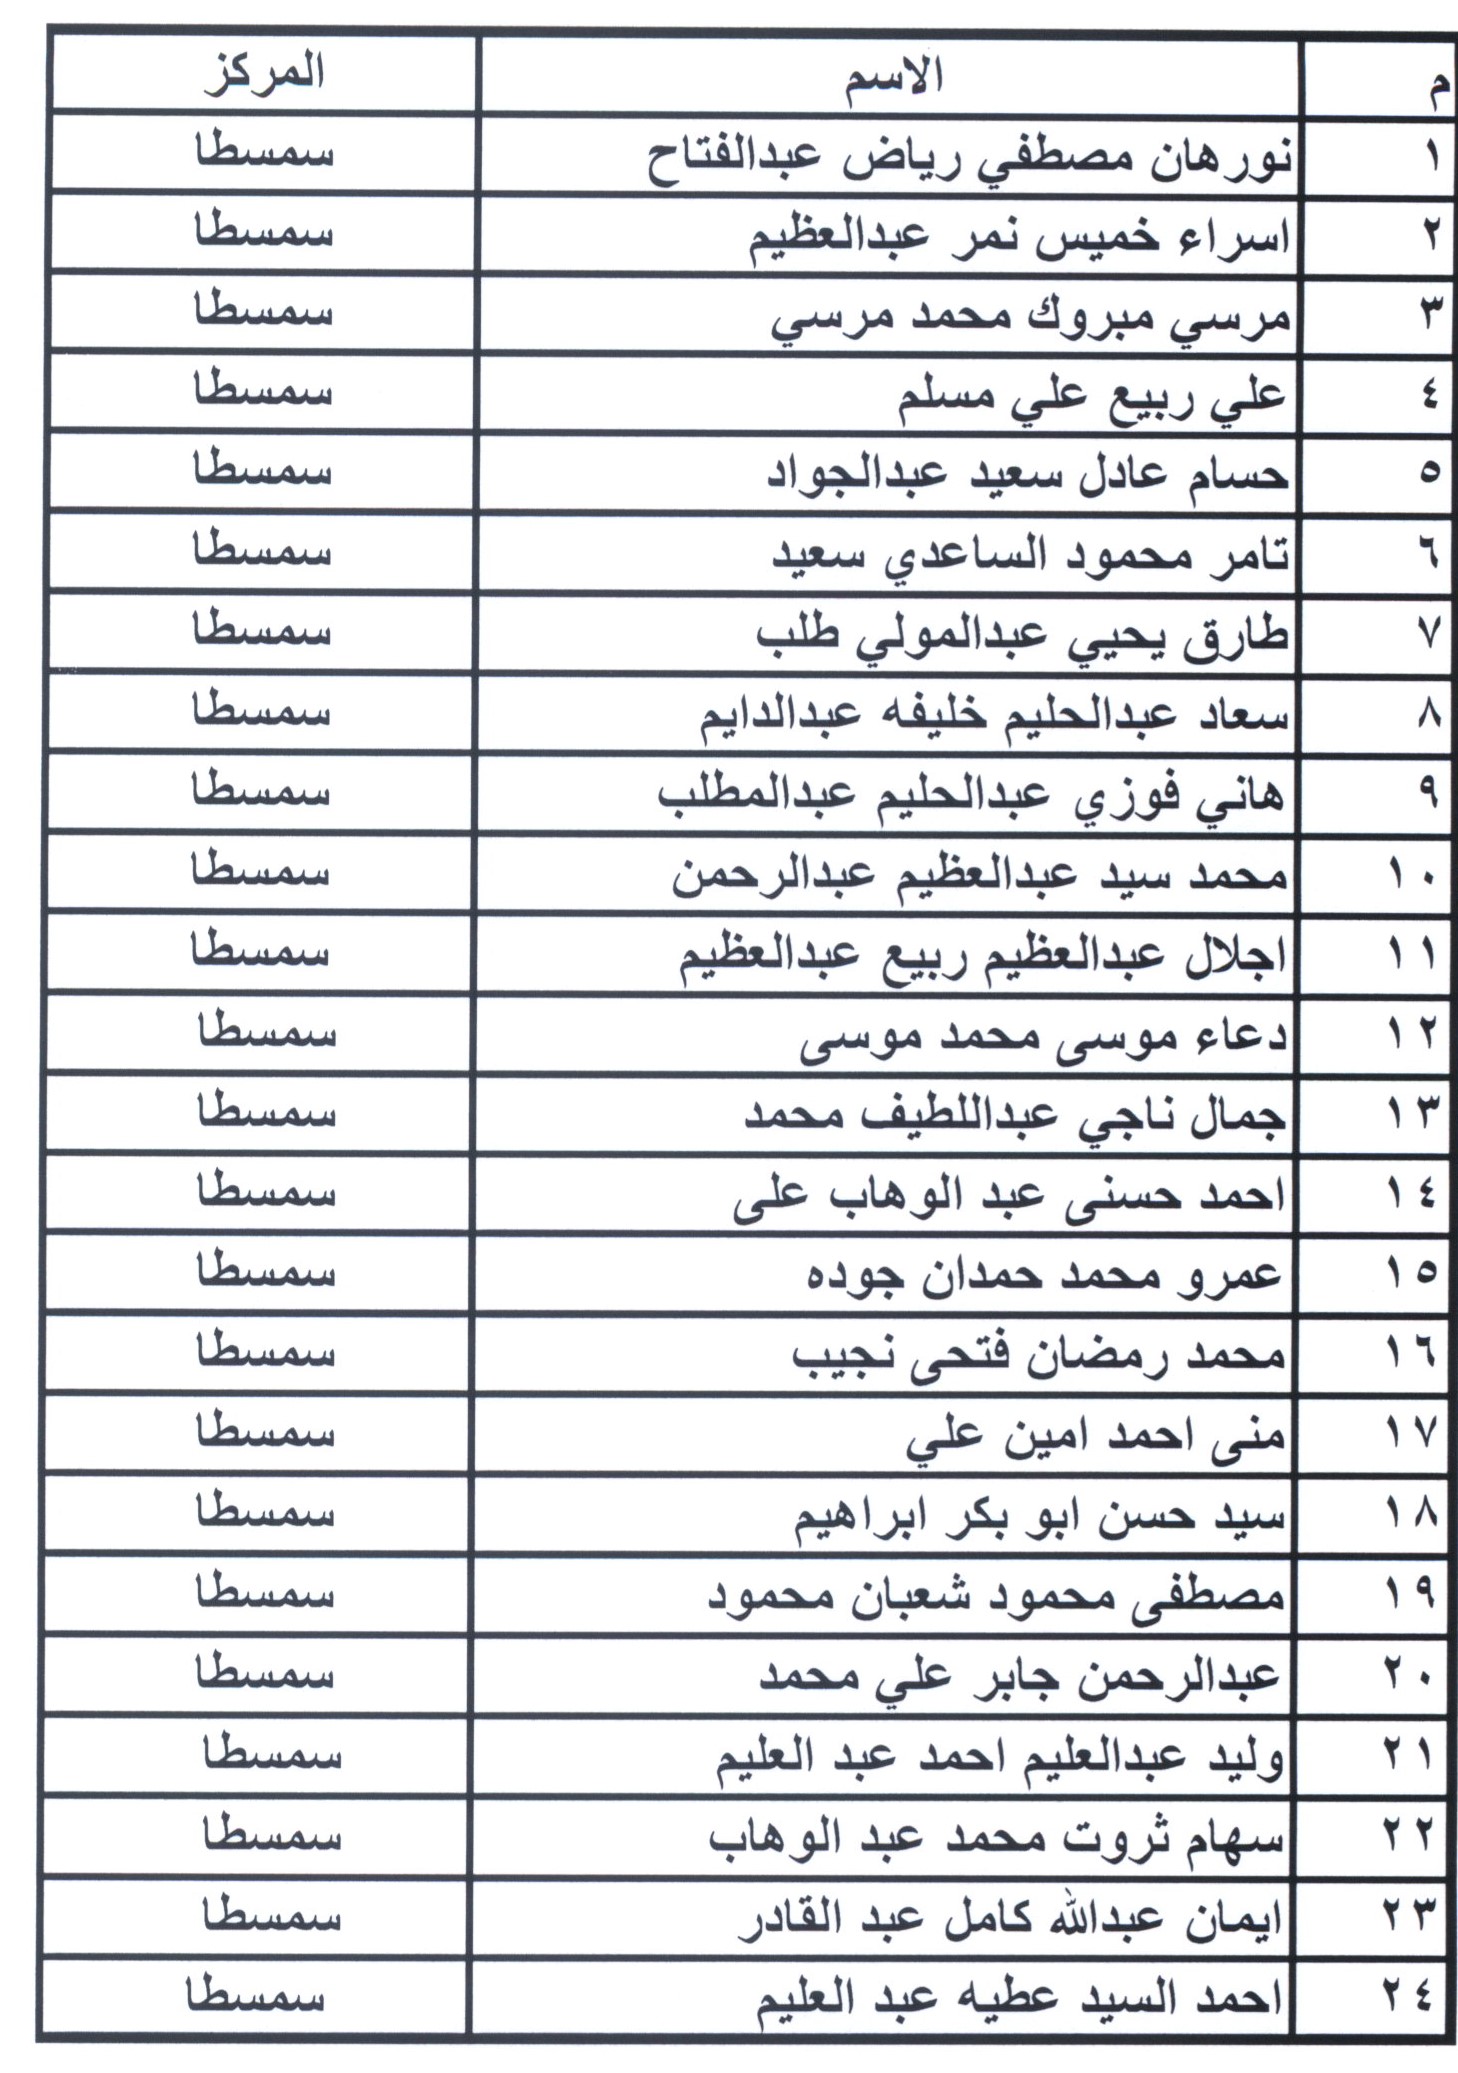 أسماء مرشحى شغل الوظائف ببمحافظة بنى سويف (13)